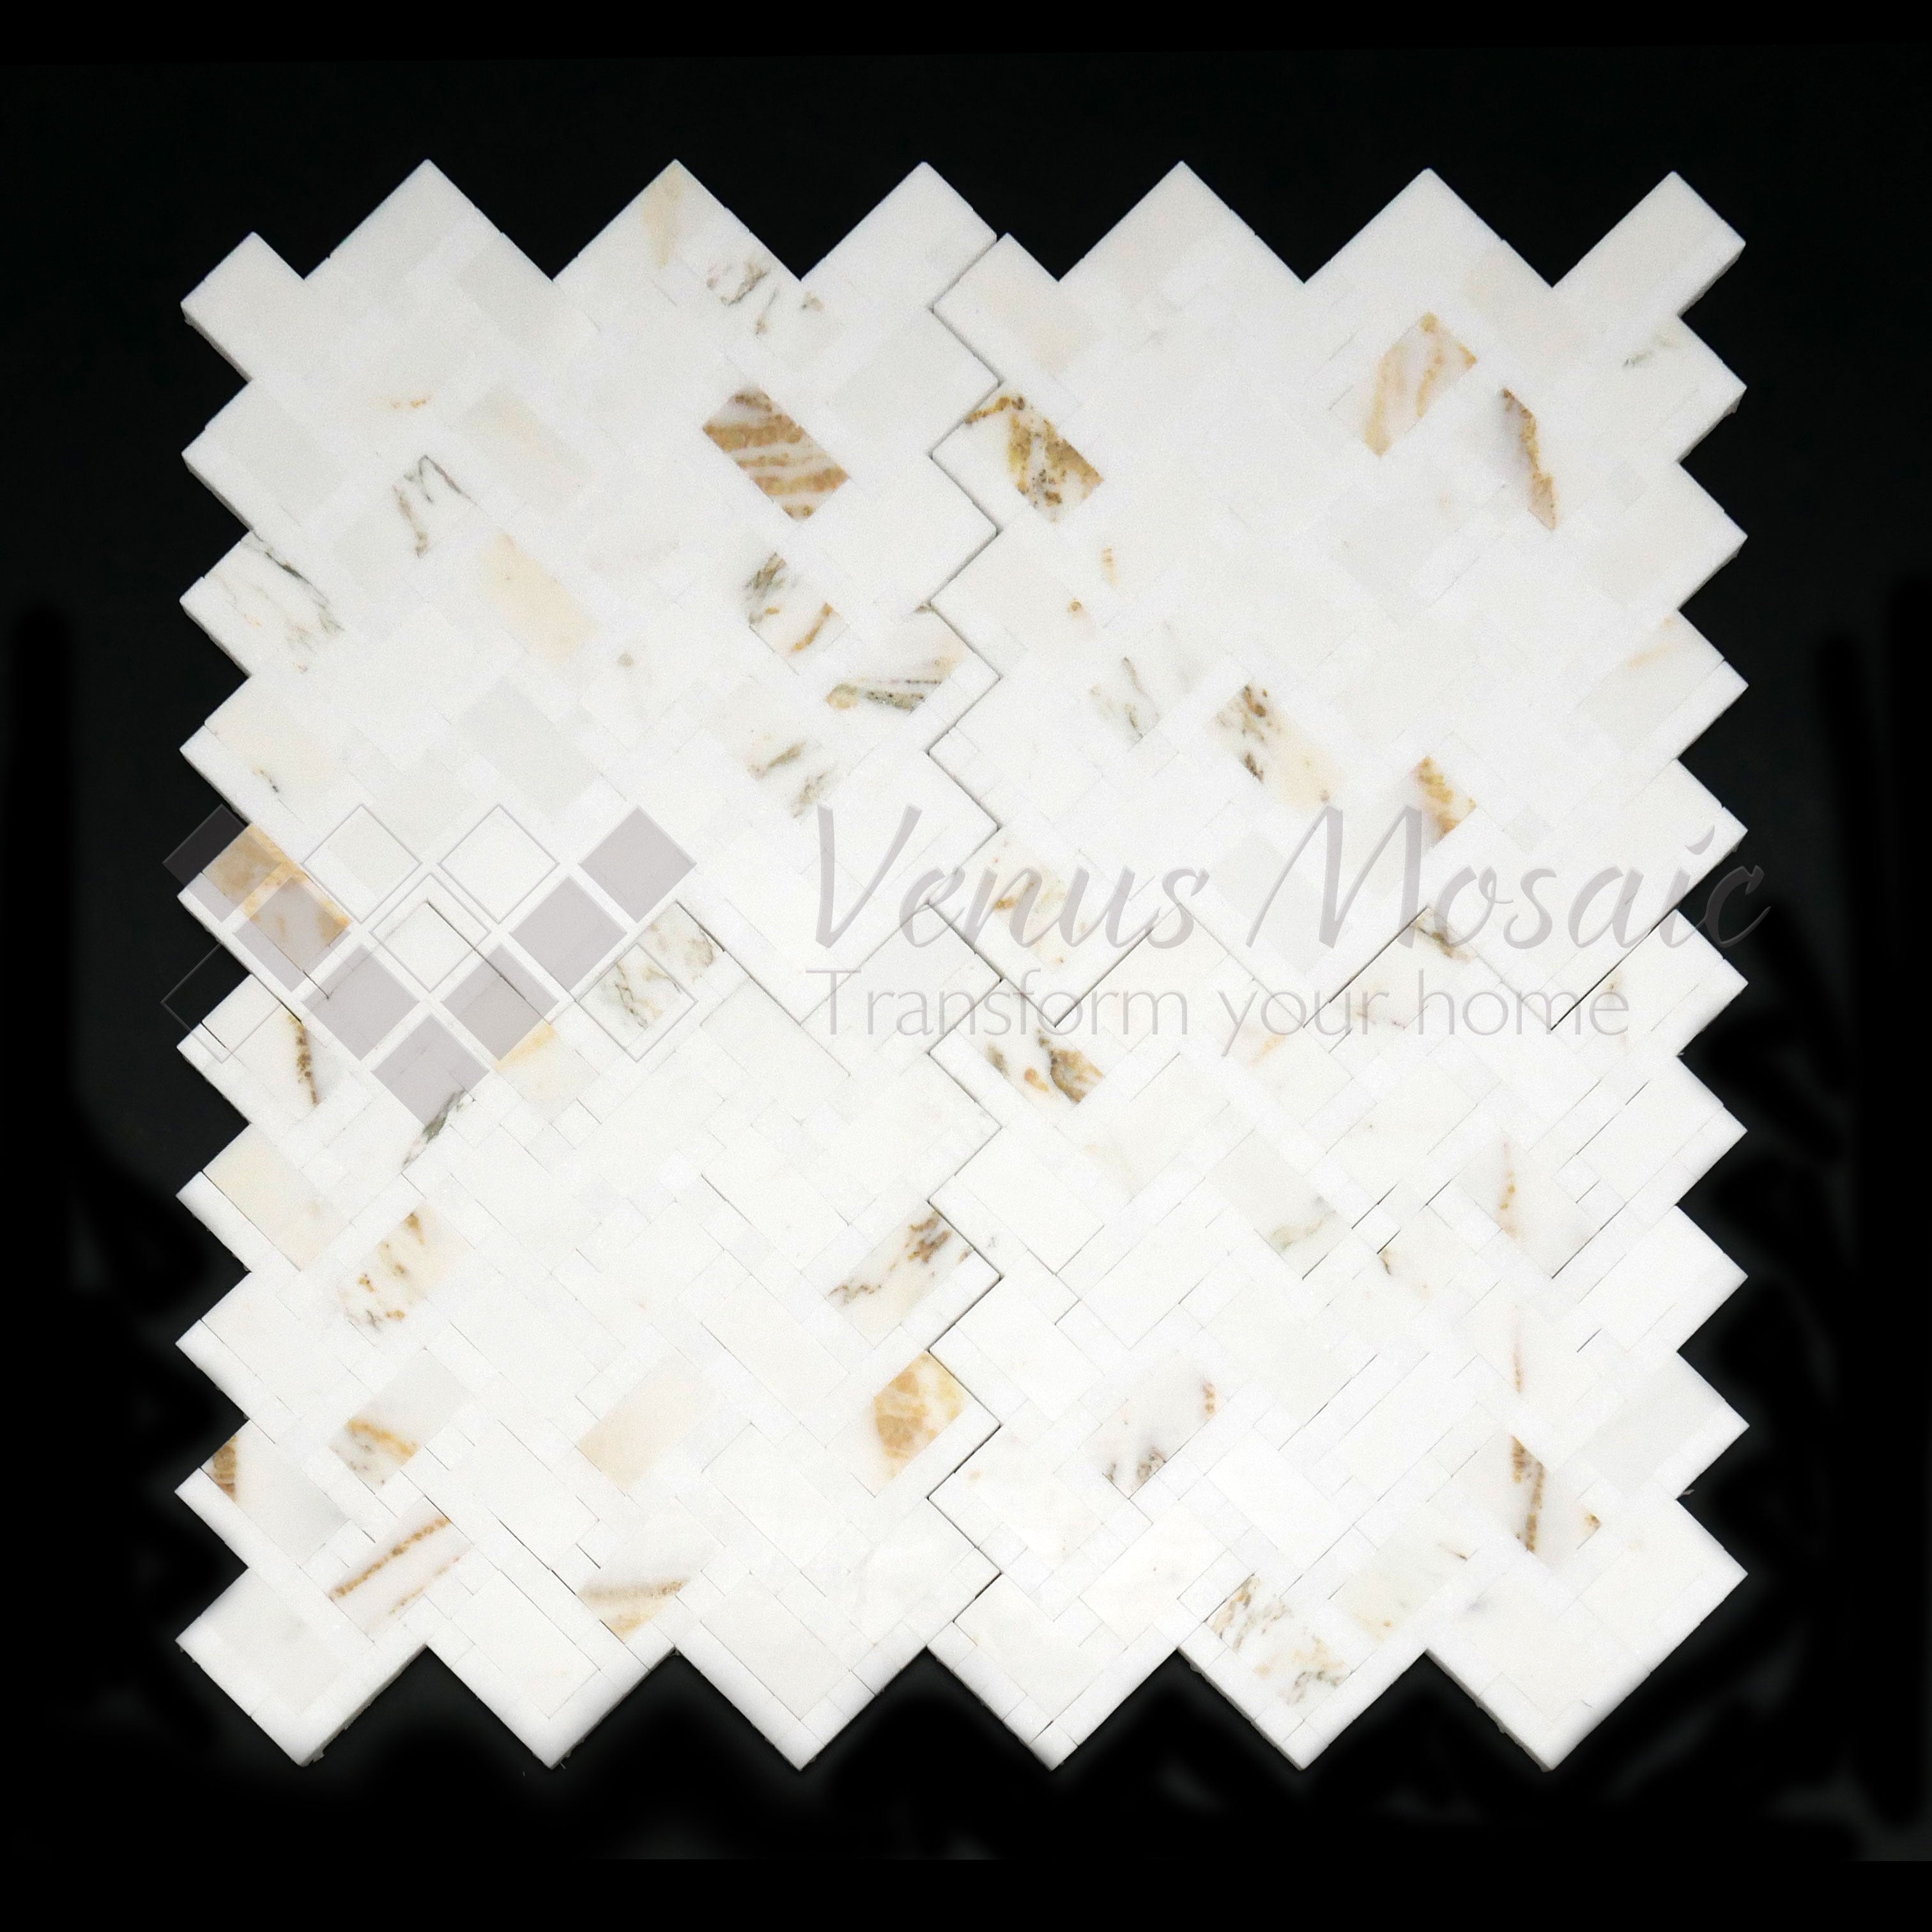 Venus Mosaic Marble Herringbone Calacatta Gold in Thassos